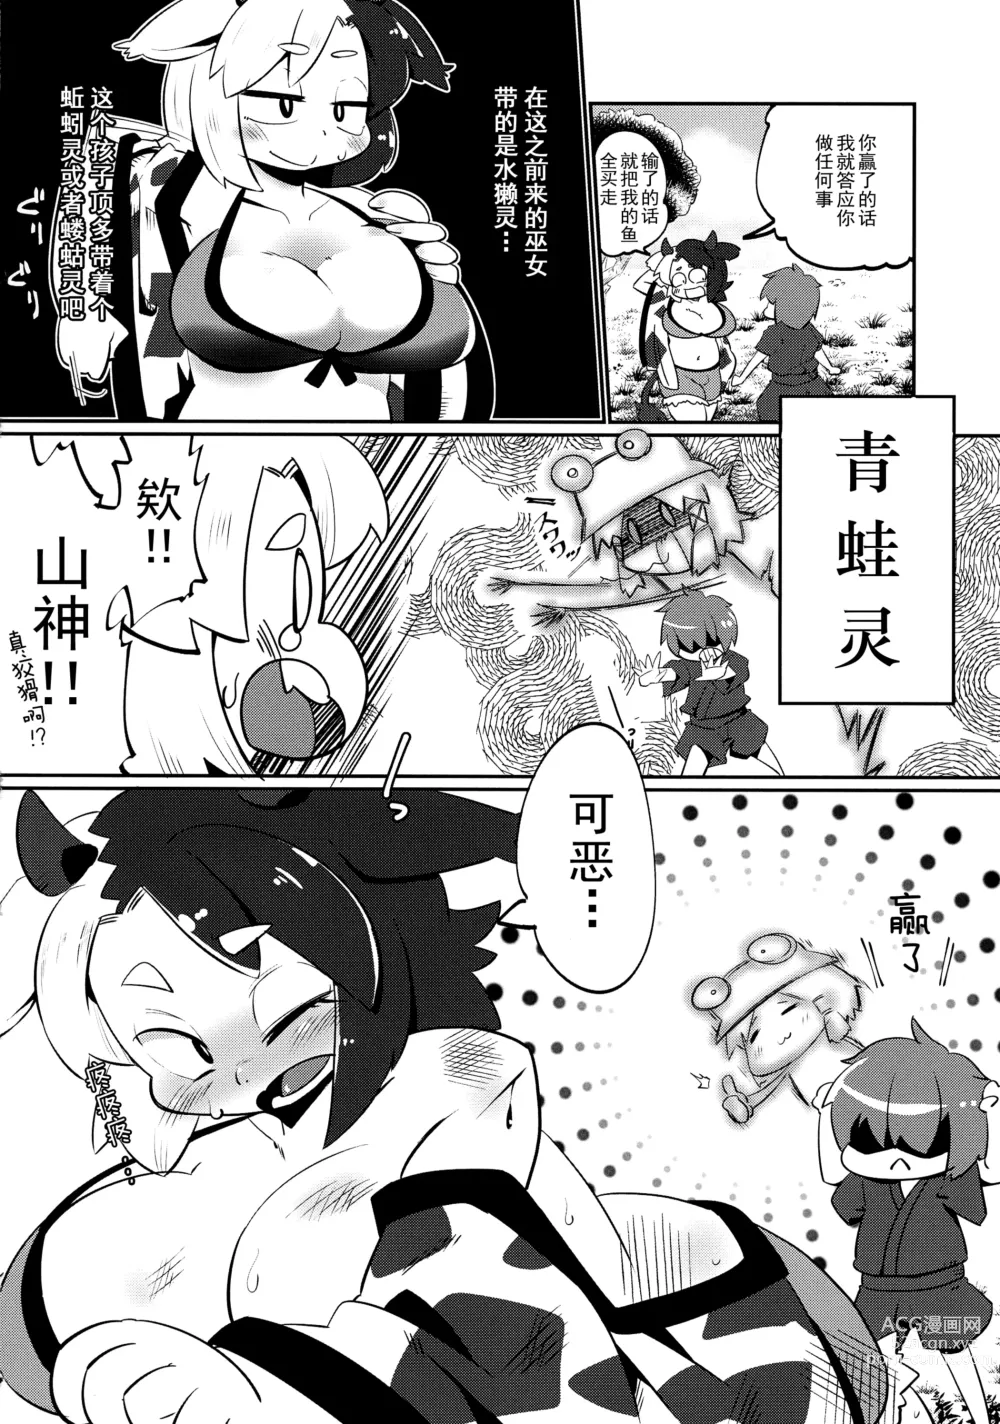 Page 5 of doujinshi Ushizaki-san VS Otokonoko